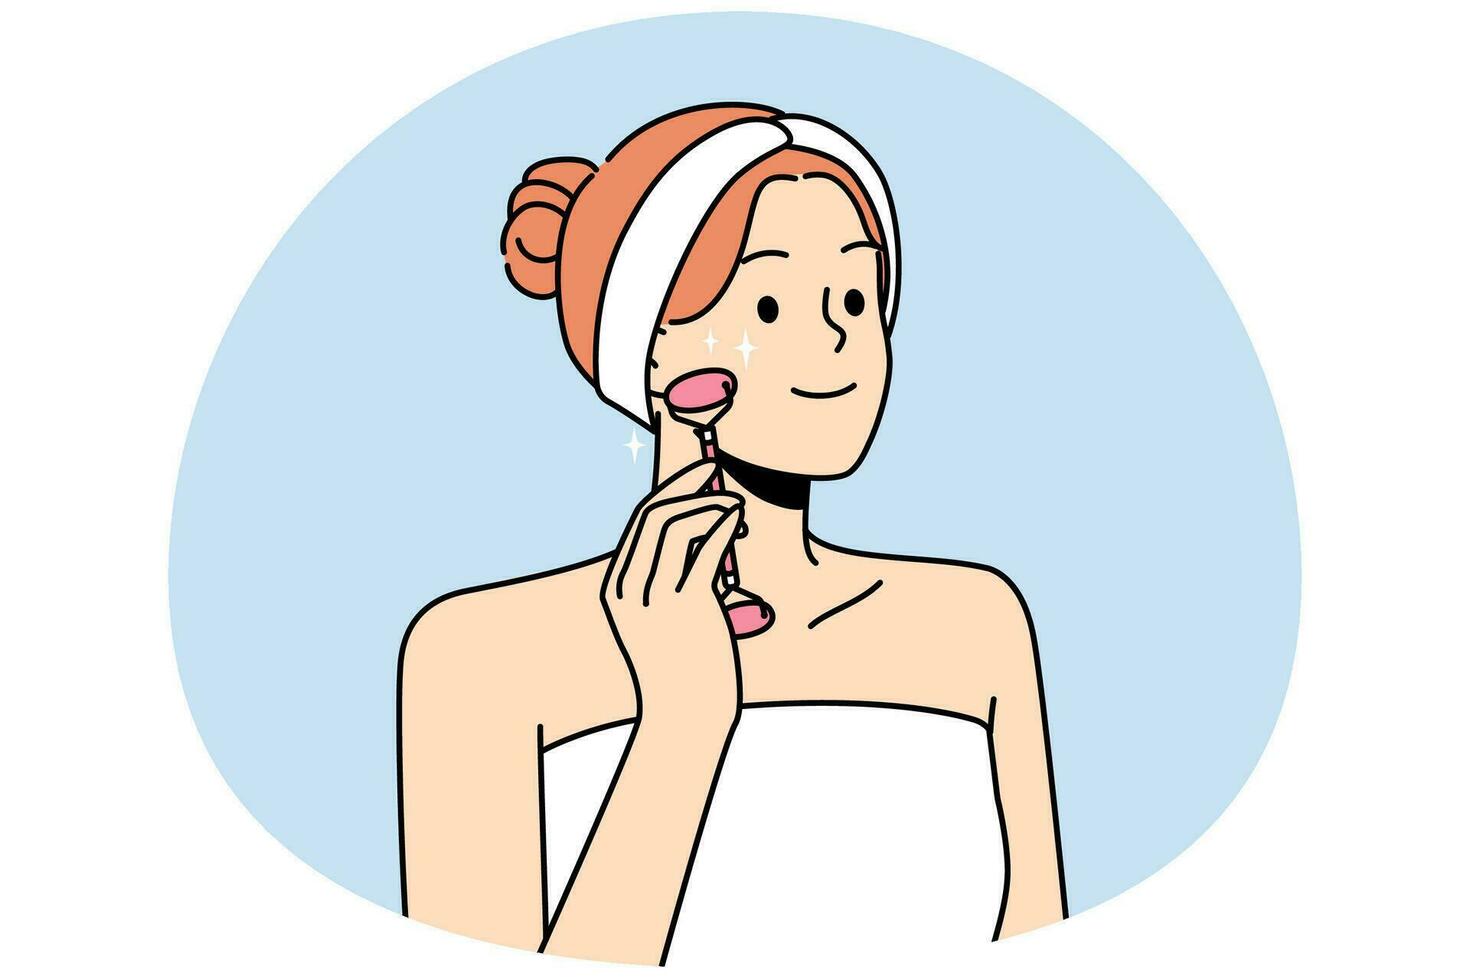 jovem sorridente na toalha faz massagem facial com rolo de beleza. garota feliz faz tratamento facial no banheiro. conceito de cuidados com a pele. ilustração vetorial. vetor